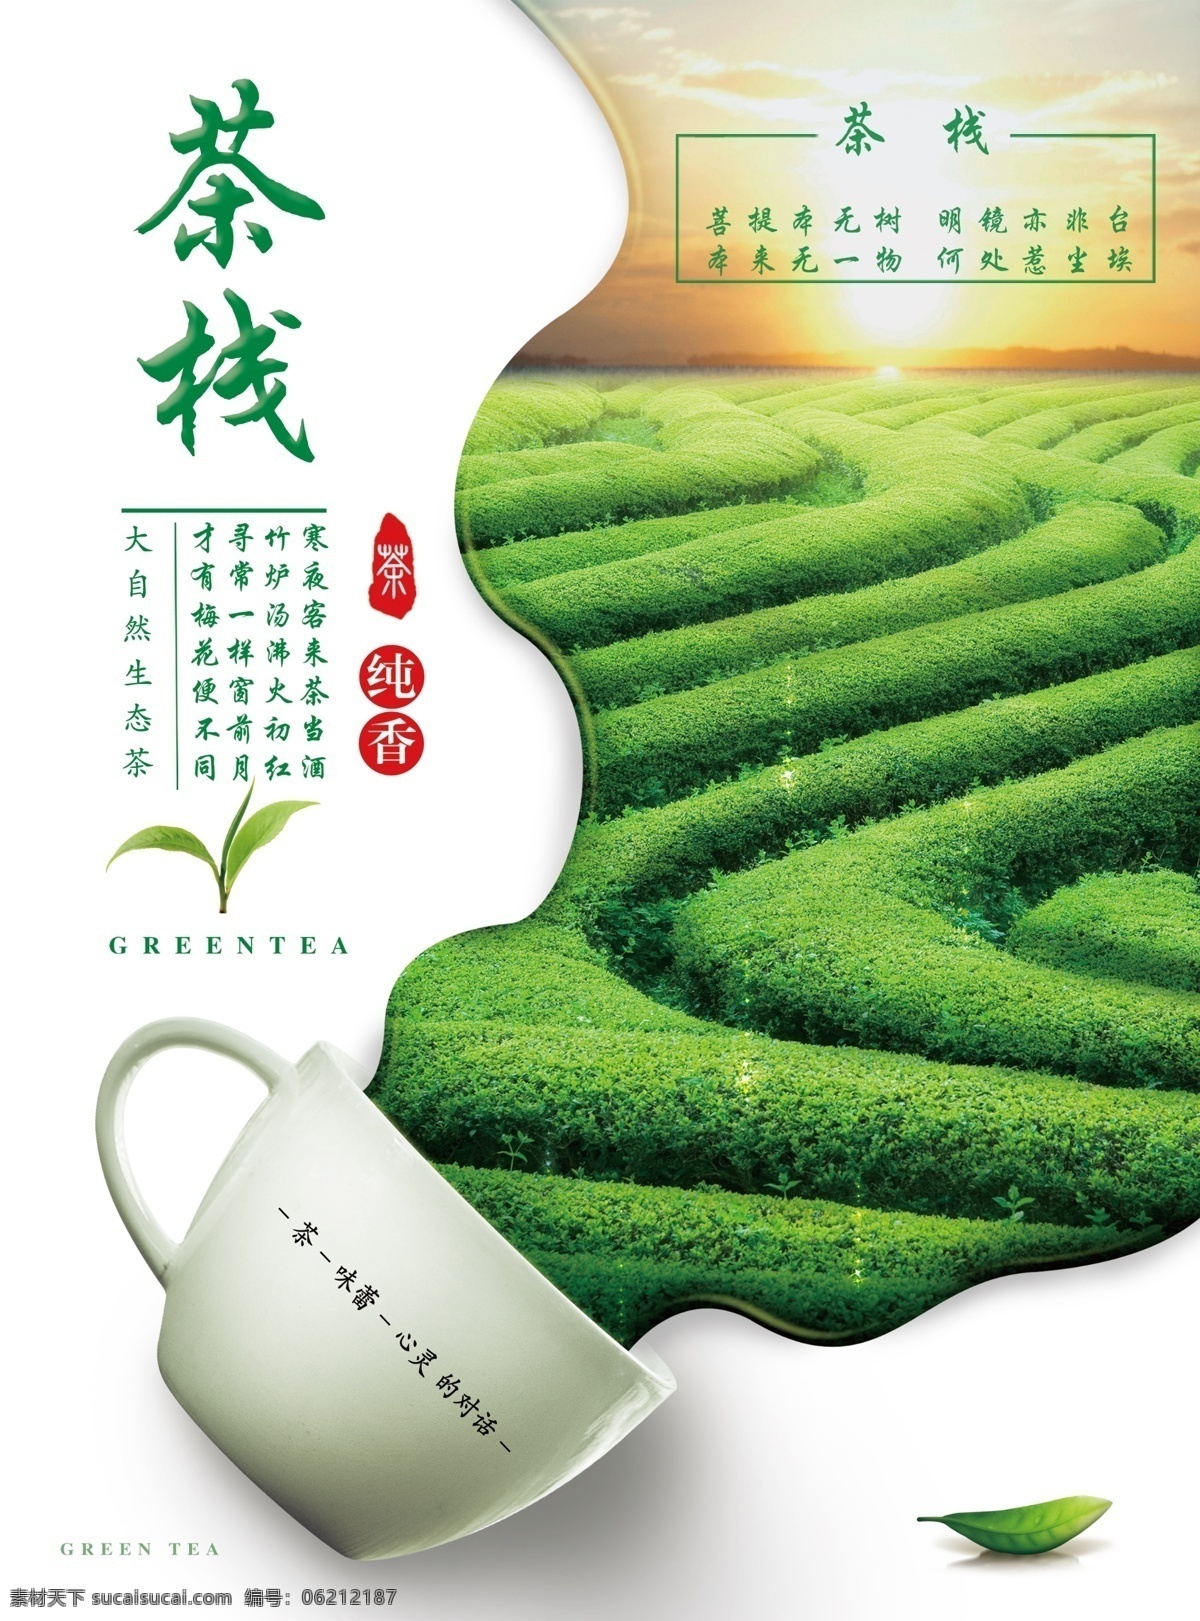 茶栈图片 茶栈 宣传页 海报 茶铺 茶 菜单菜谱